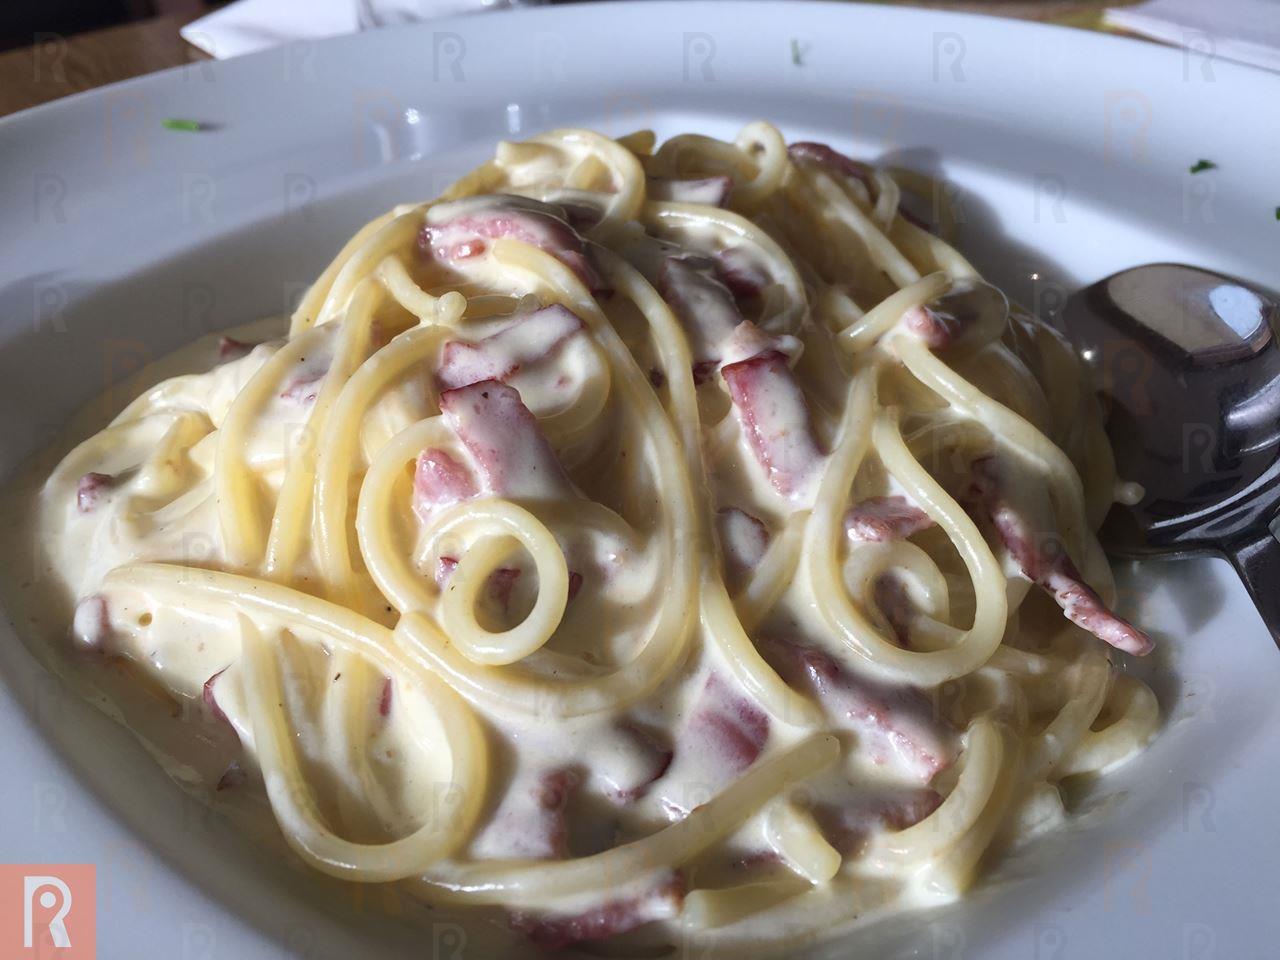 Price of Spaghetti Carbonara is KD 3.550